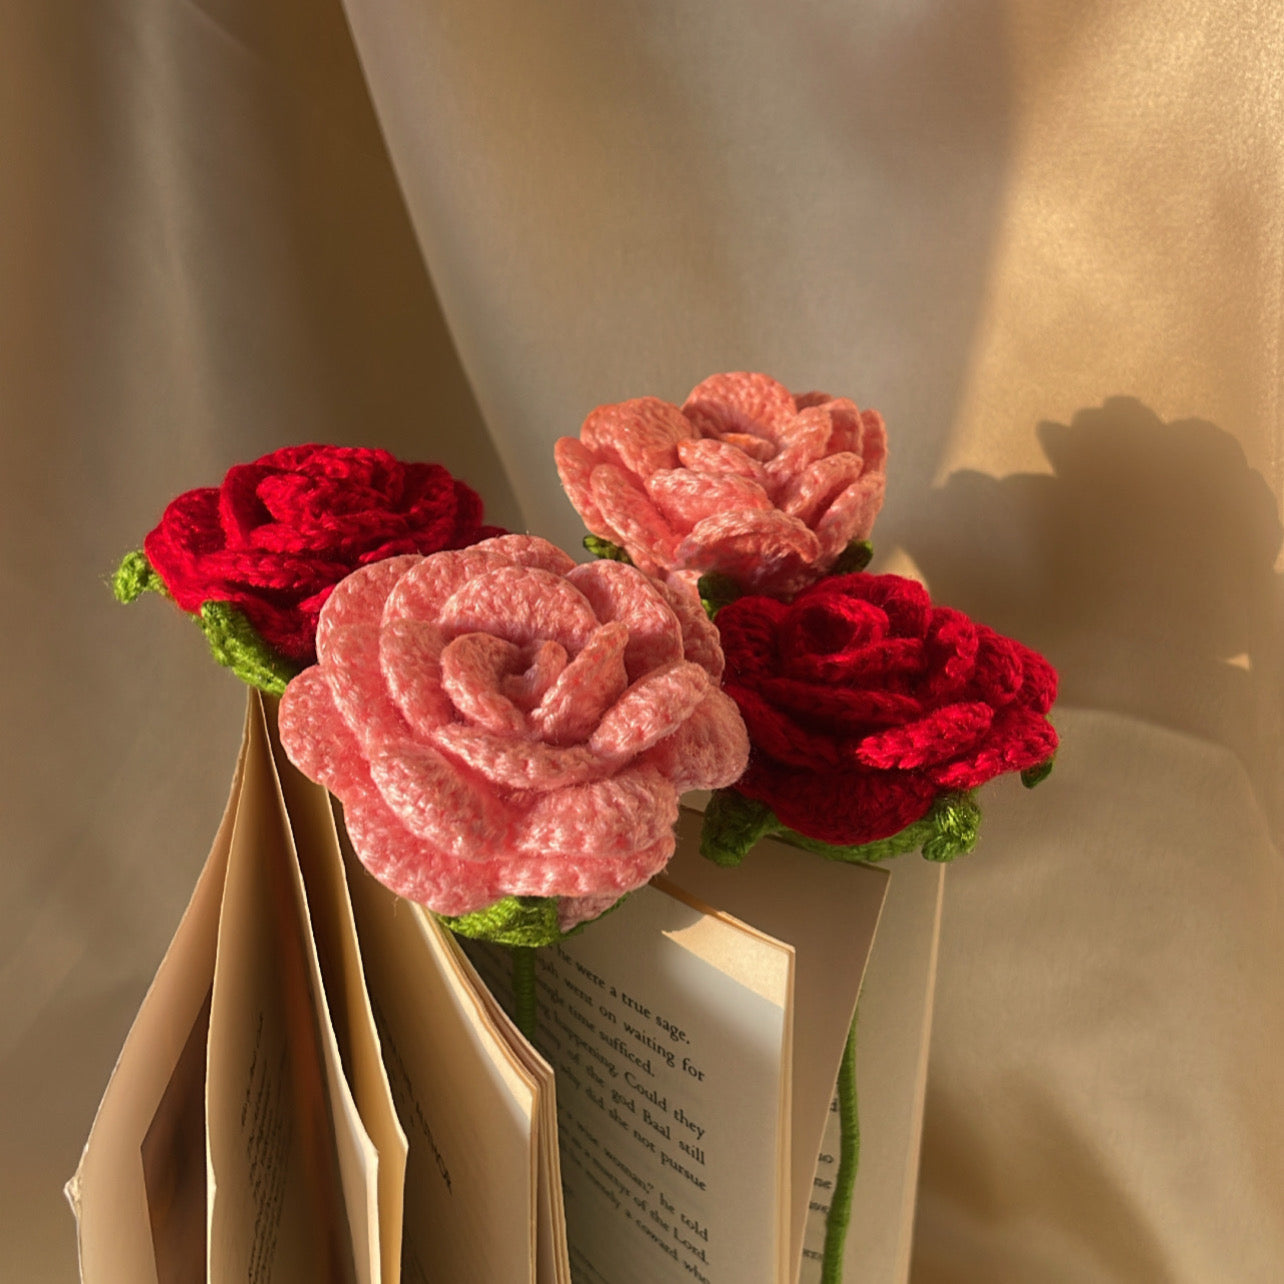 Rose crochet flowers - Crochet flowers : 1 piece - Ladywithcraft